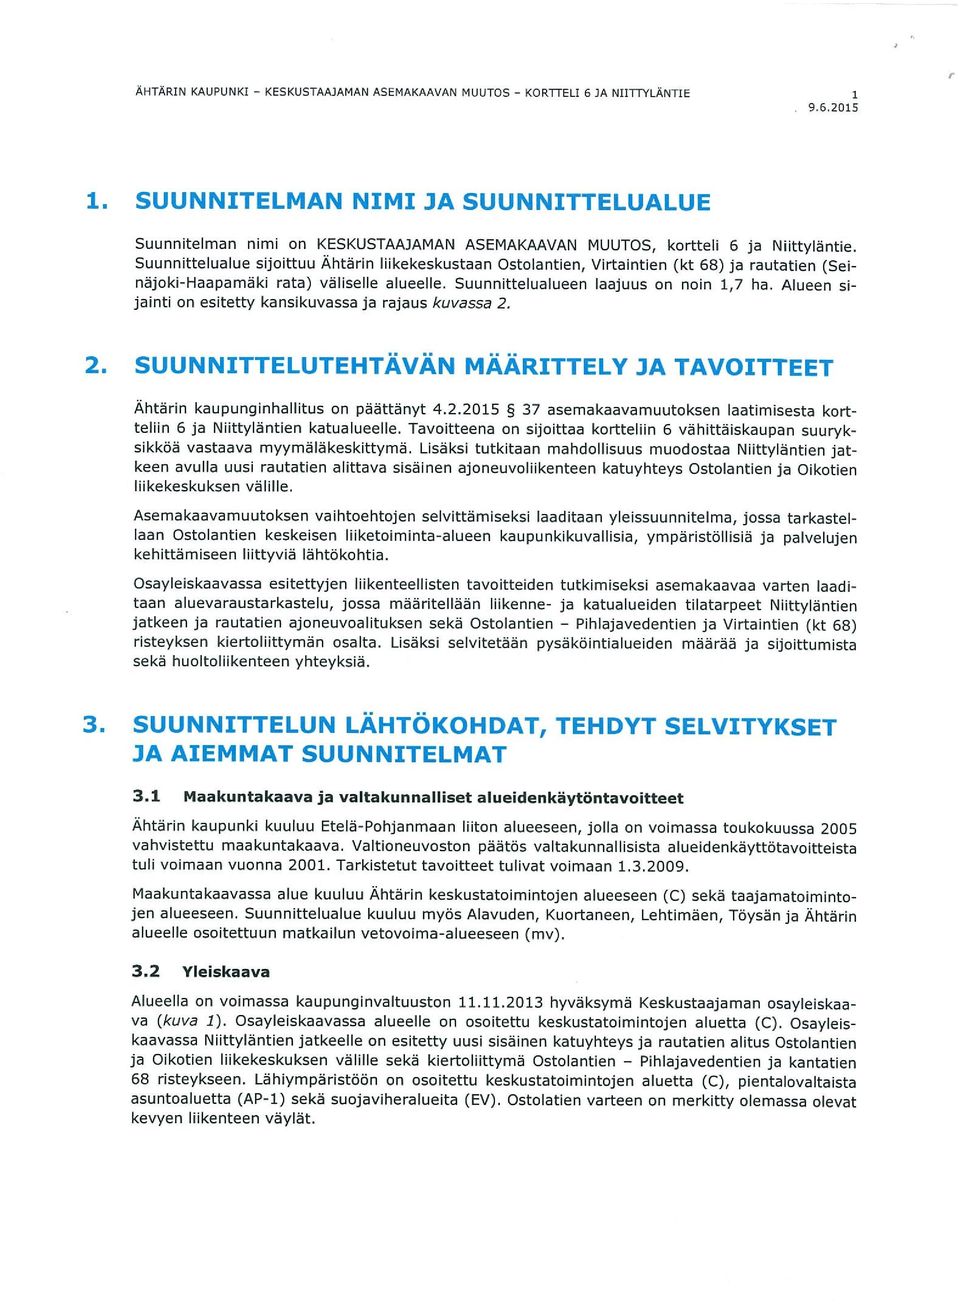 Suunnittelualue sijoittuu Ähtärin liikekeskustaan Ostolantien, Virtaintien (kt 68) ja rautatien (Sei näjoki-haapamäki rata) väliselle alueelle. Suunnittelualueen laajuus on noin 1,7 ha.